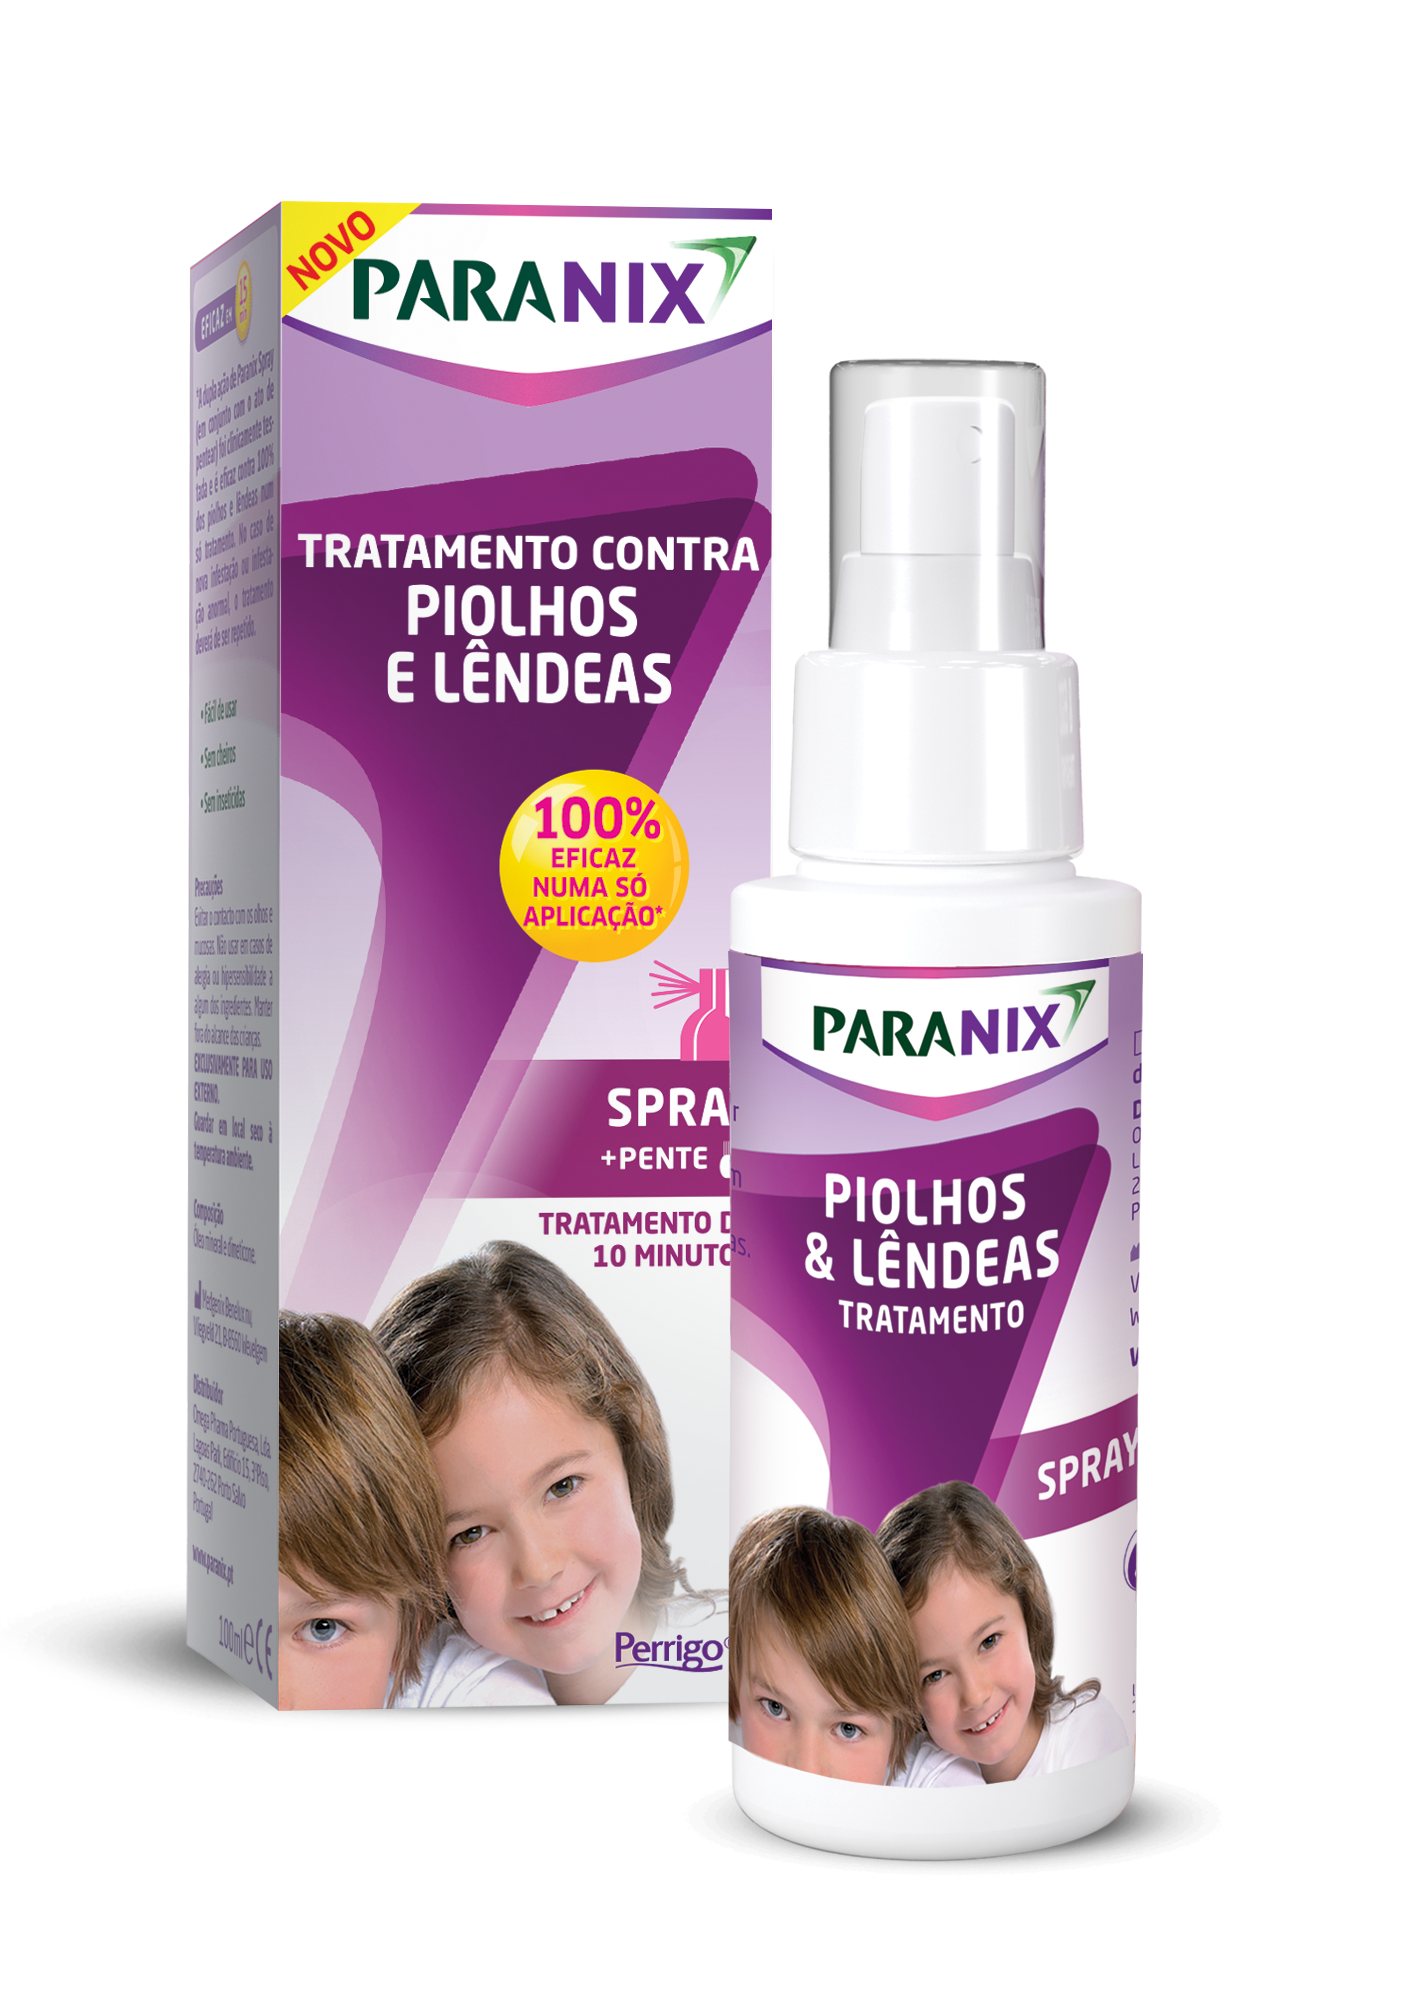 Paranix Spray de Tratamento